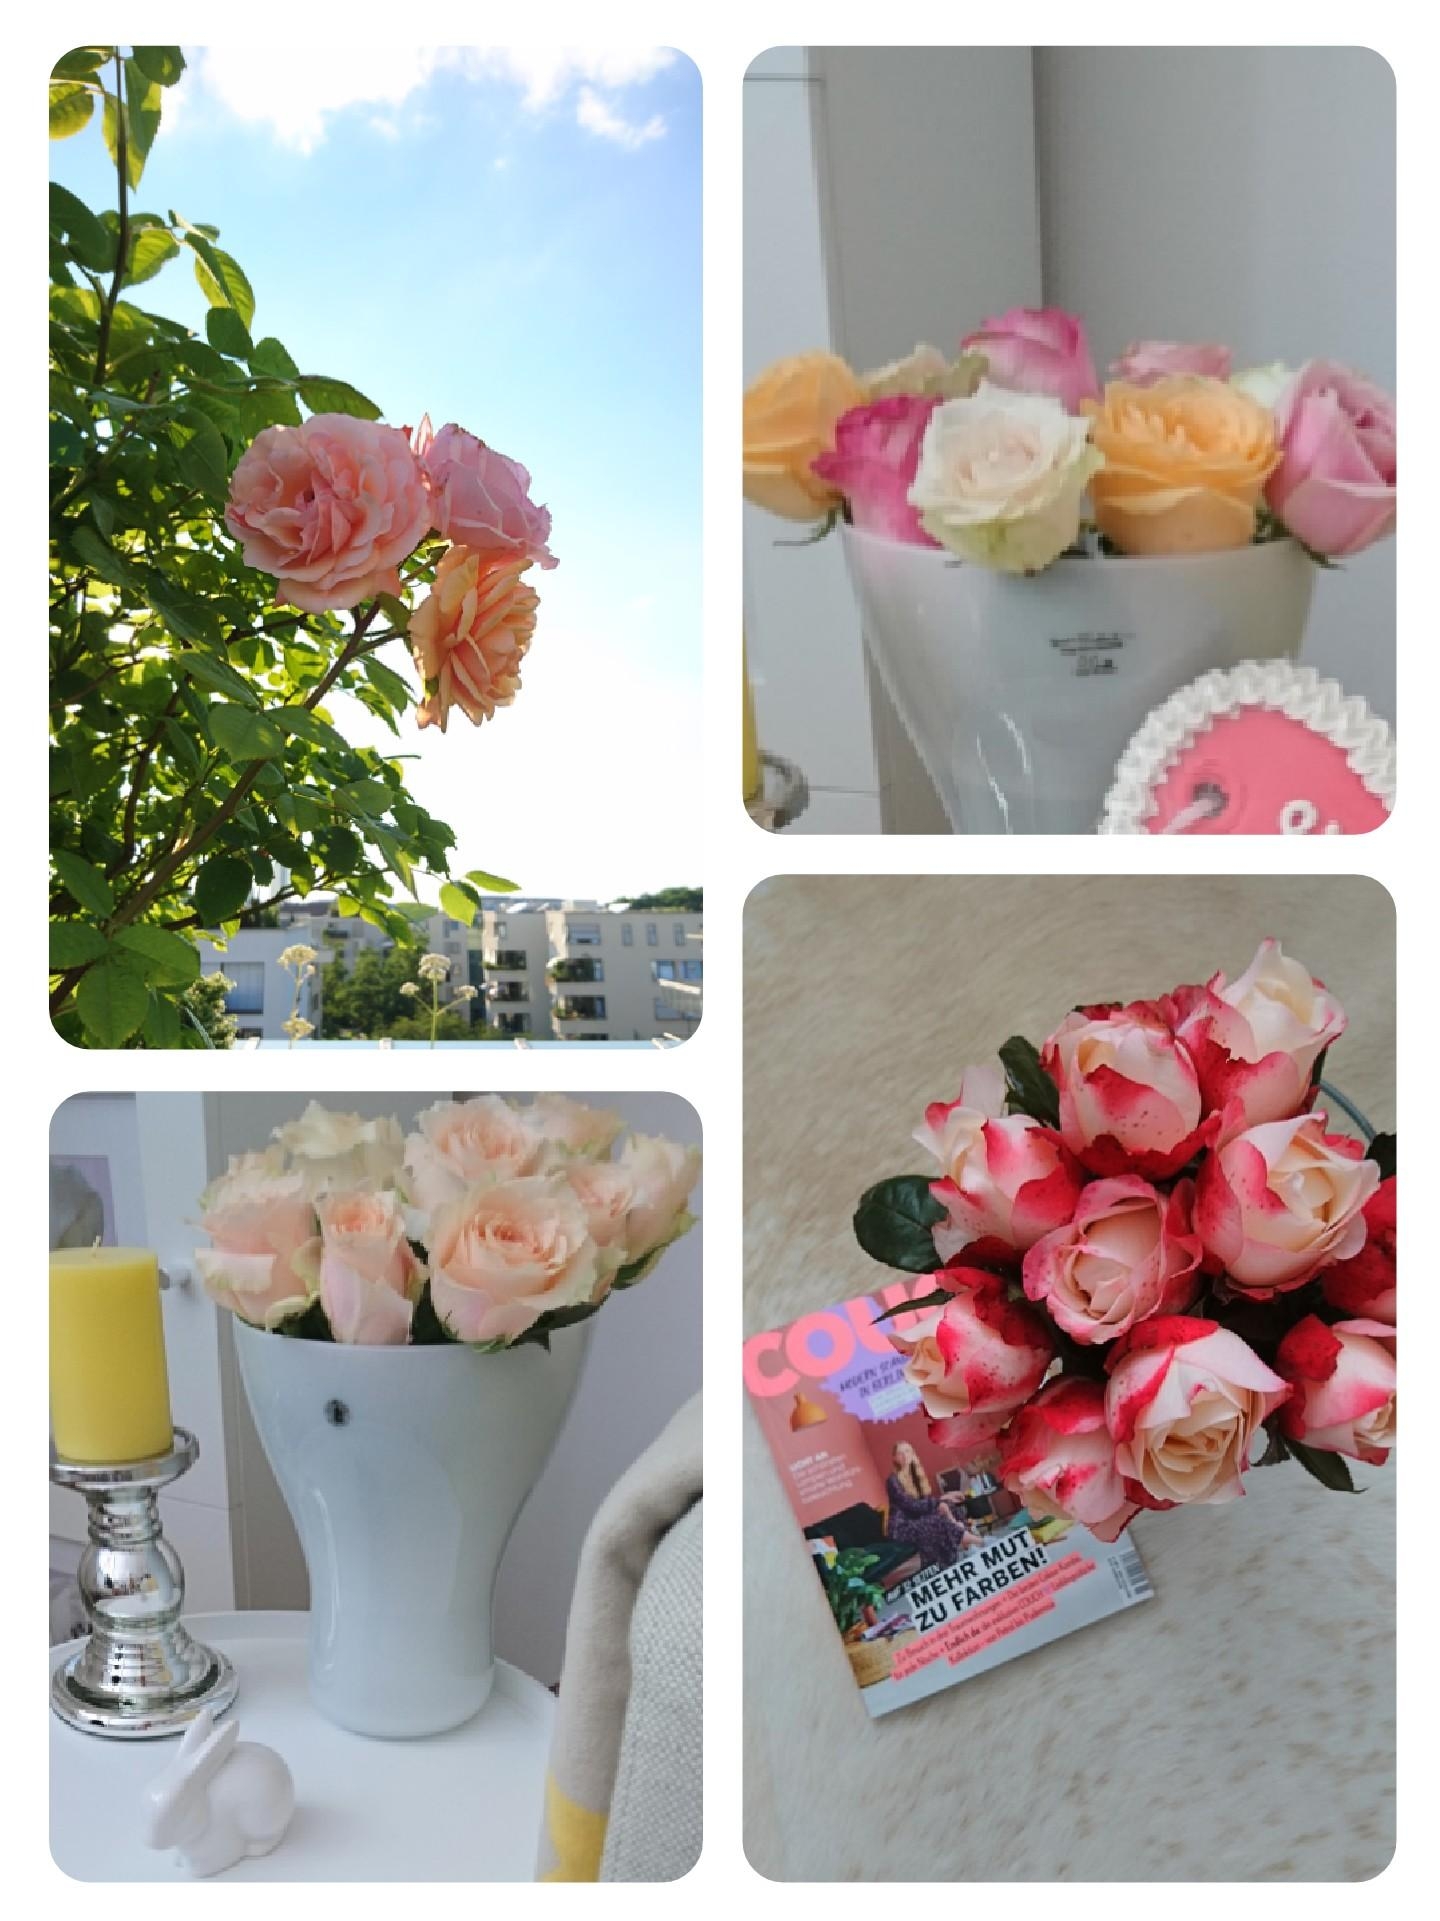 An duftenden Freilandrosen in rosé komm ich nicht vorbei ❤️ Und Du @Ute71? Hast Du auch eine #Lieblingsblume? 